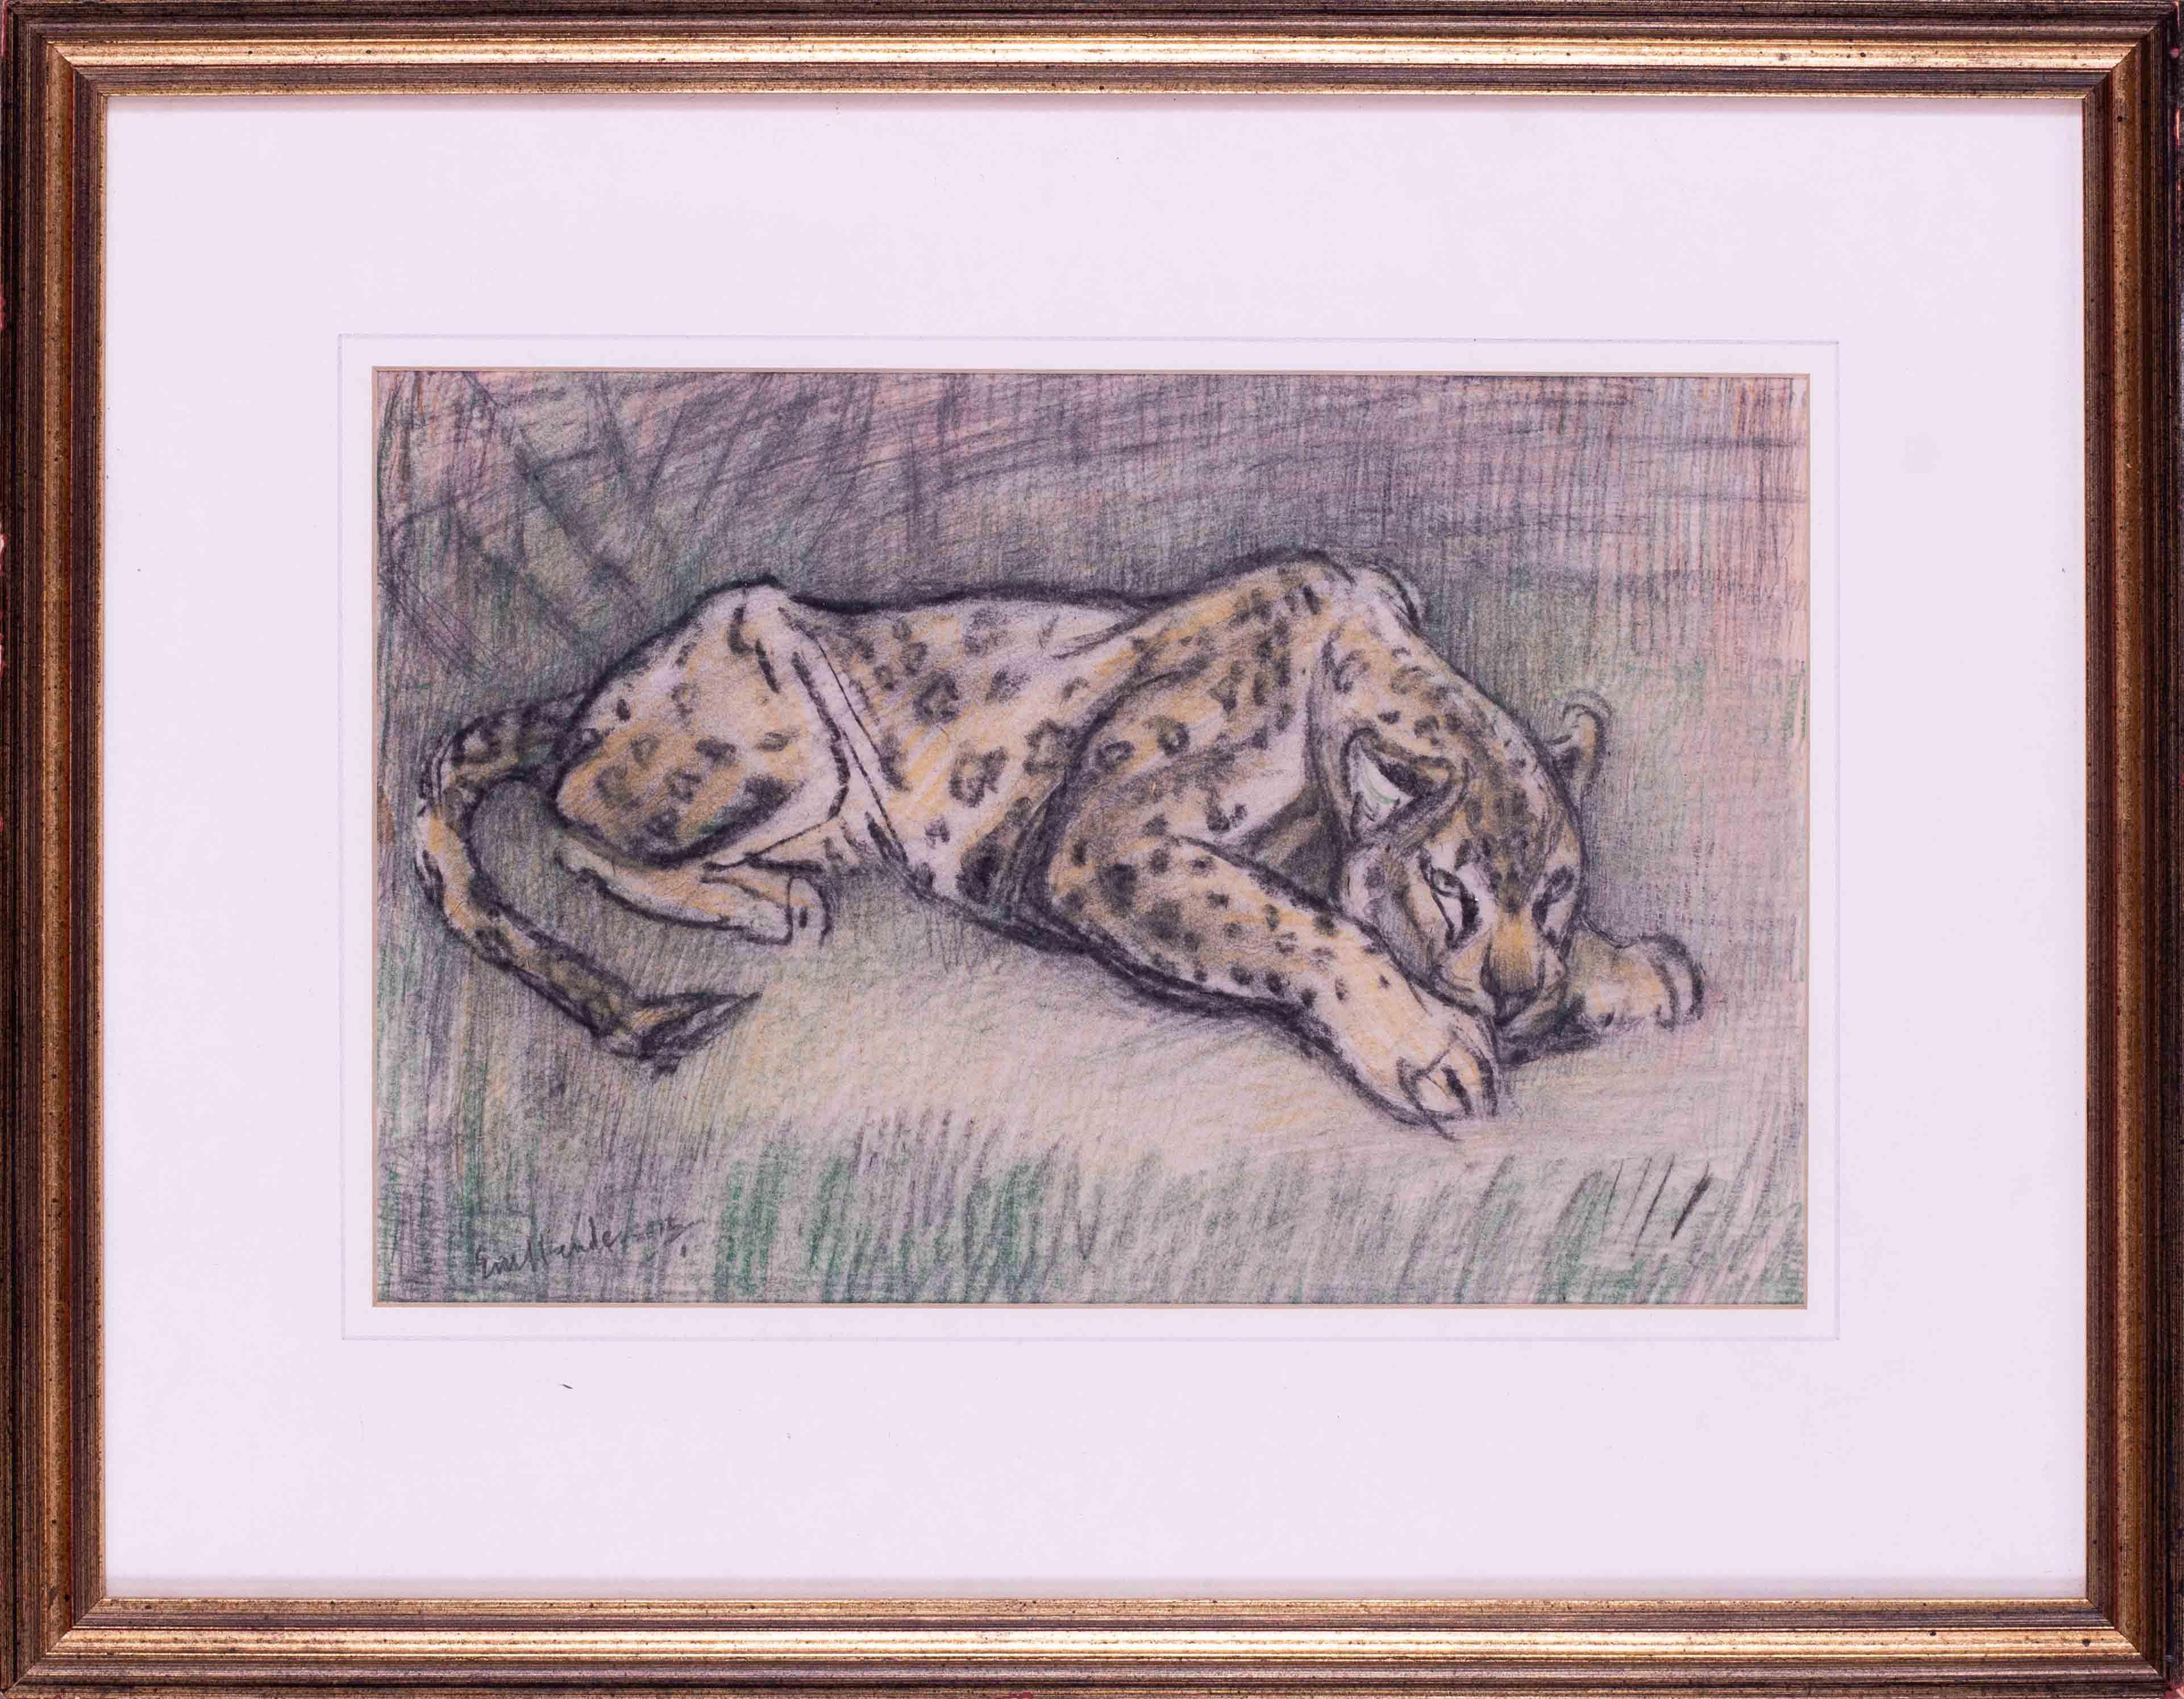 Crouching-Leopardenzeichnung der britischen Künstlerin Elsie Marian Henderson aus dem 20. Jahrhundert